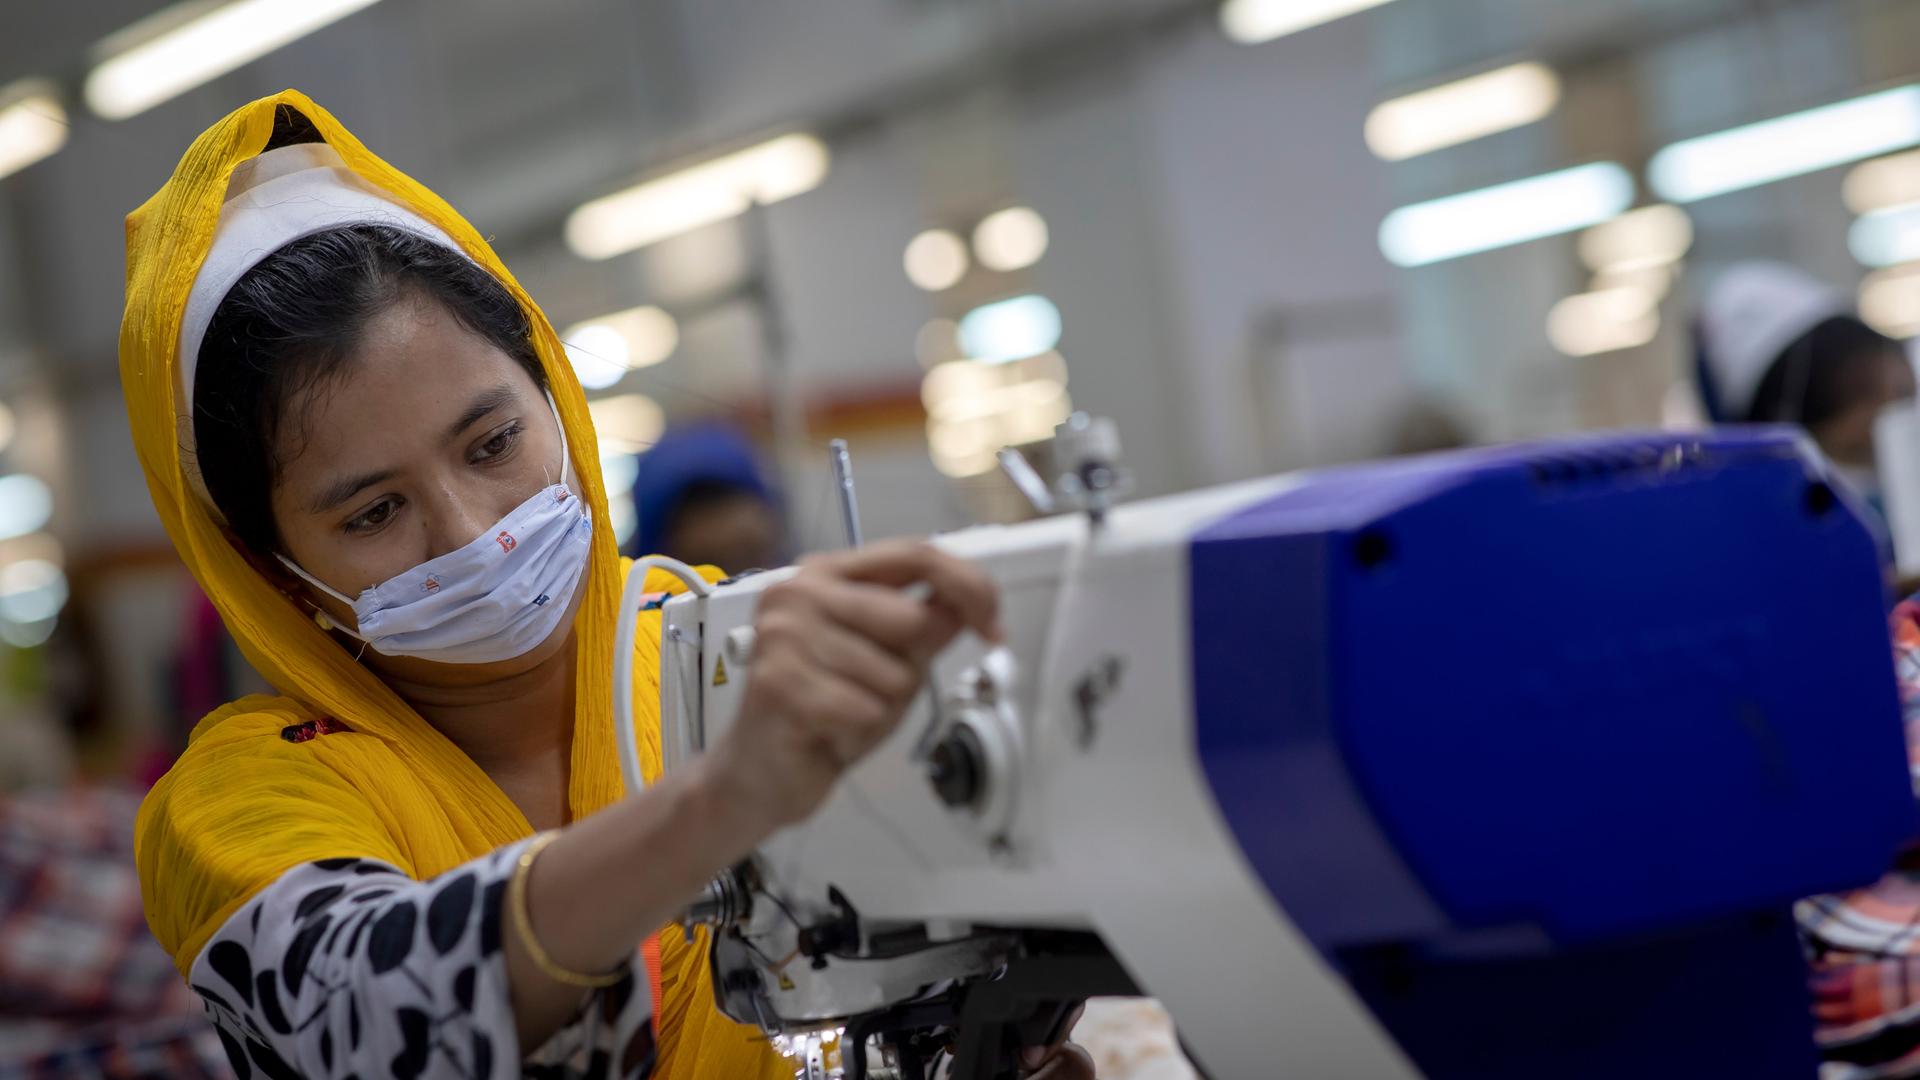 Frauen arbeiten in einer Textilfabrik.Â Nach China ist Bangladesh der zweitgröÃte Produzent von Textilien. Die Arbeitsbedingungen und der Umweltschutz der dortigen Produktion gibt immer wieder Anlass ztur Kritik. In Bangladesch haben tausende Fabrikbeschäftigte - hauptsächlich Frauen - durch die Corona-Krise ihre Jobs verloren, nachdem internationale Modeketten coronabedingt viele Aufträge stornierten.